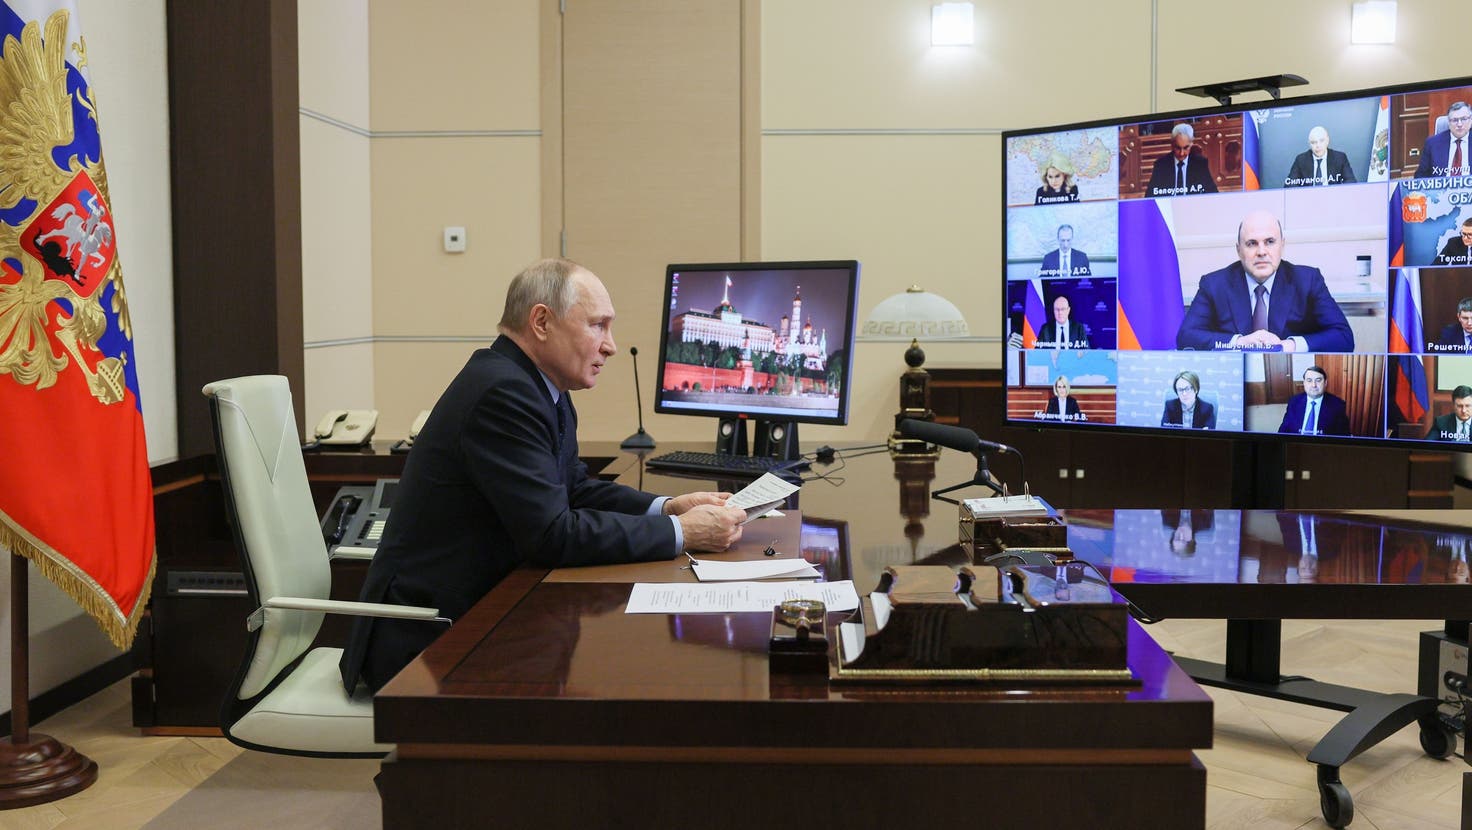 Nicht jeder ist ihm wohlgesonnt: Russlands Präsident Wladimir Putin in einer Videokonferenz mit Teilen der politischen Elite. (Gavriil Grigorov / AP)